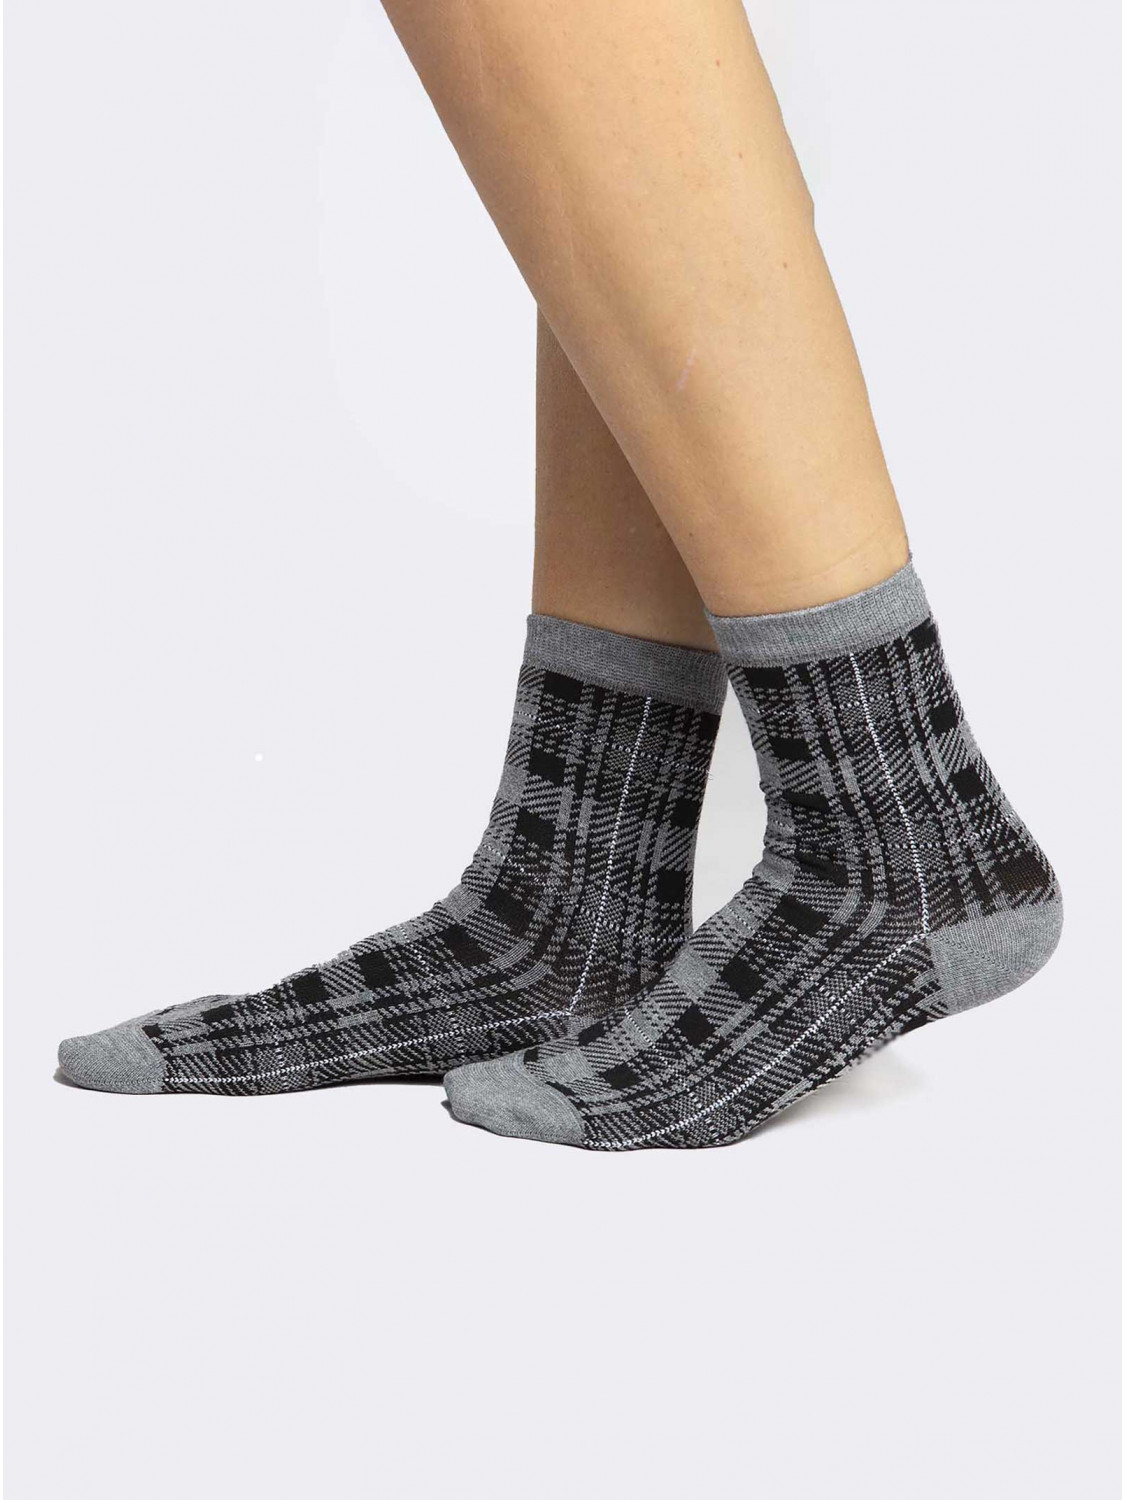 Tartan patterned crew socks in warm Cotton